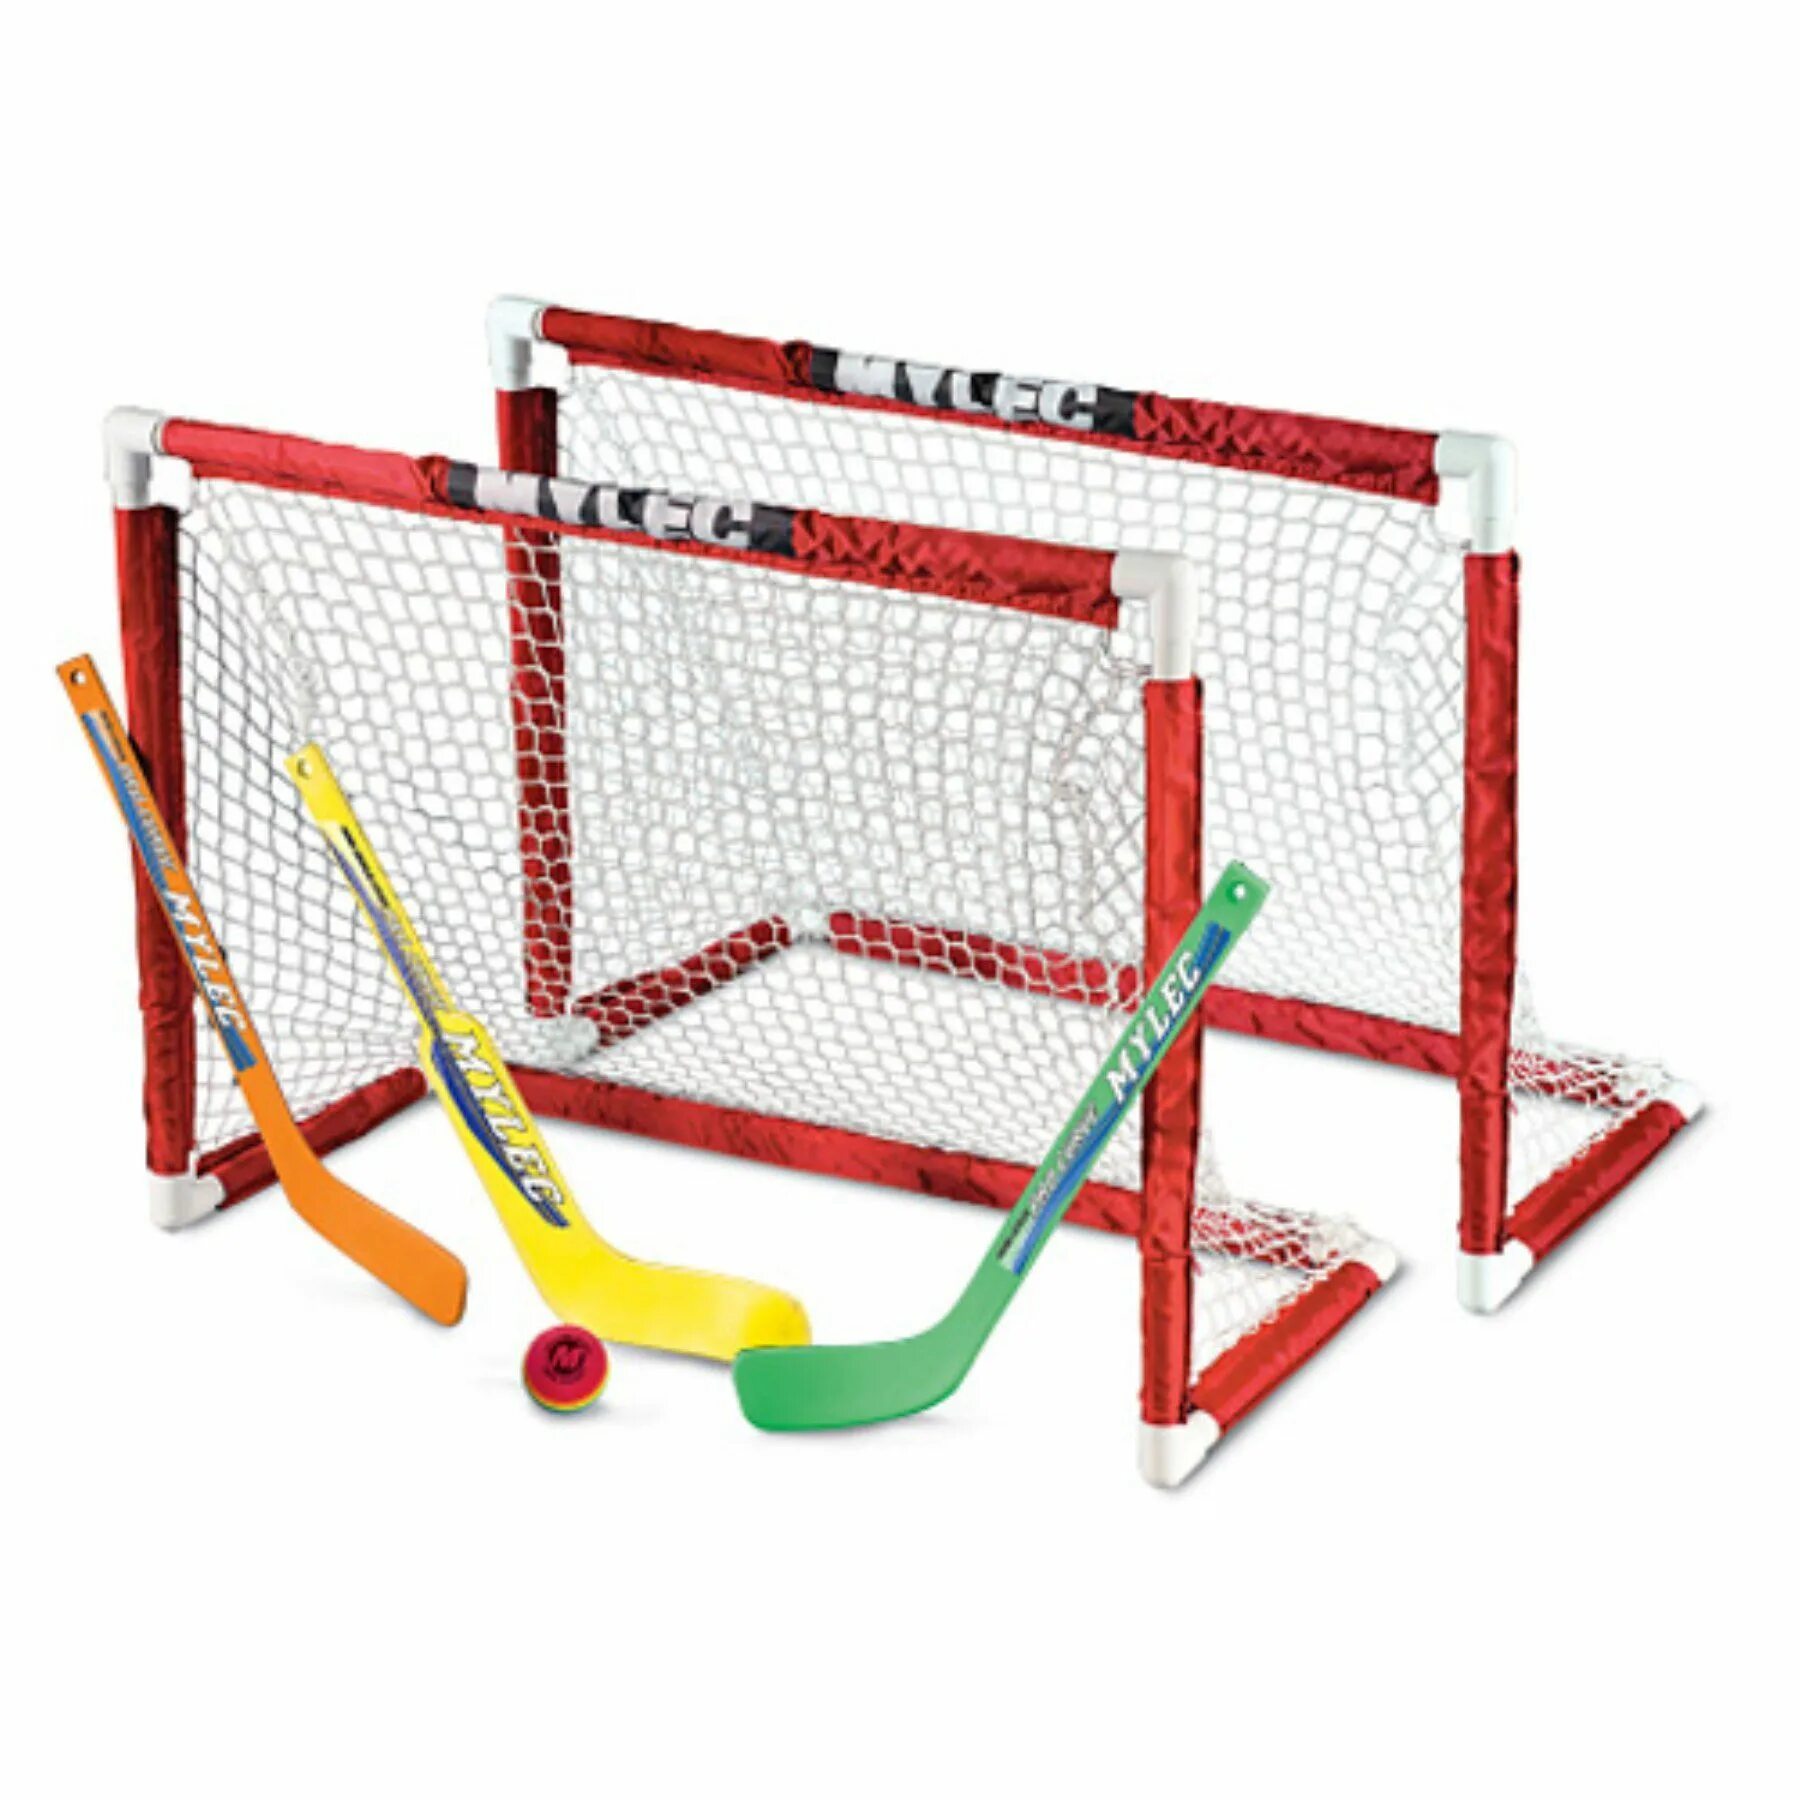 Купит мини ворота. Хоккейные ворота мини хоккей Bauer. Детские ворота ССМ Mini Hockey Set. Мини ворота для хоккея Bauer. Canadian Hockey goal ворота.